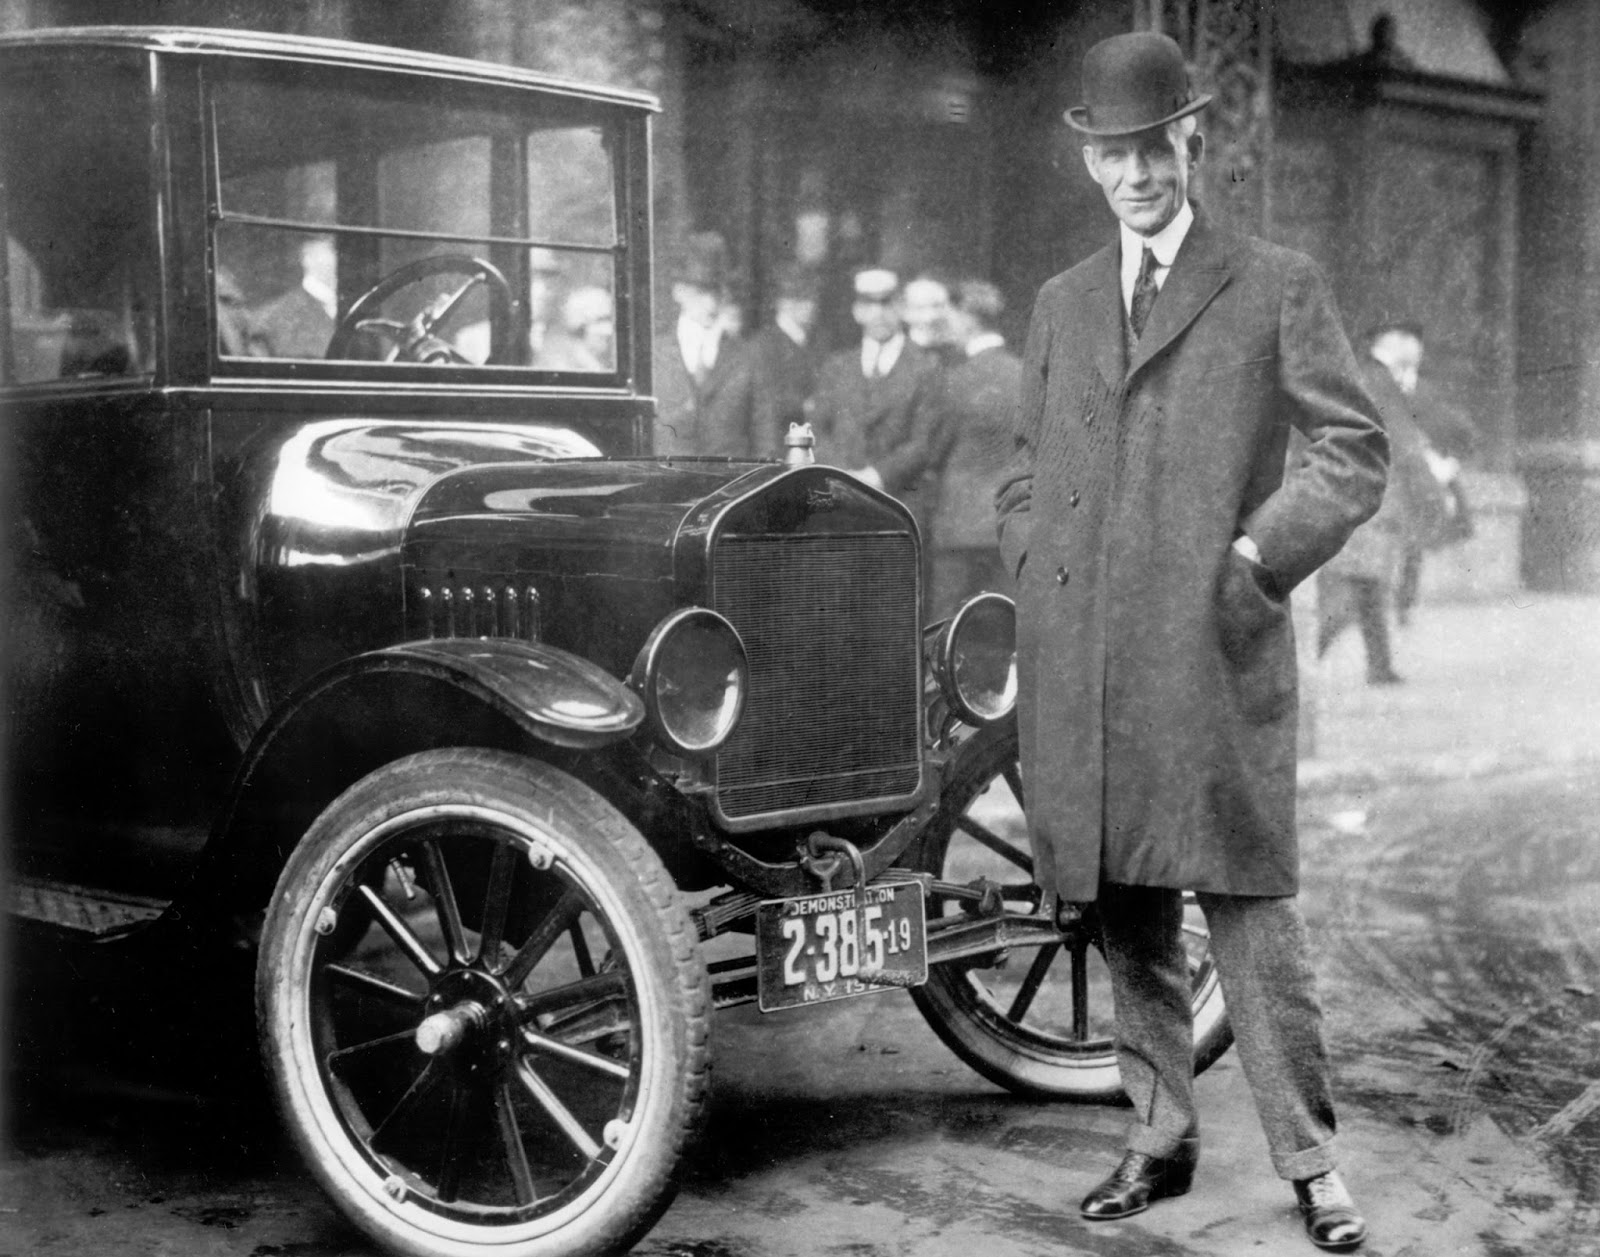 O2Bhenry2Bford Όταν ο Henry Ford, έφτιαξε το πρώτο του μοτέρ, μέσα σε έναν νεροχύτη